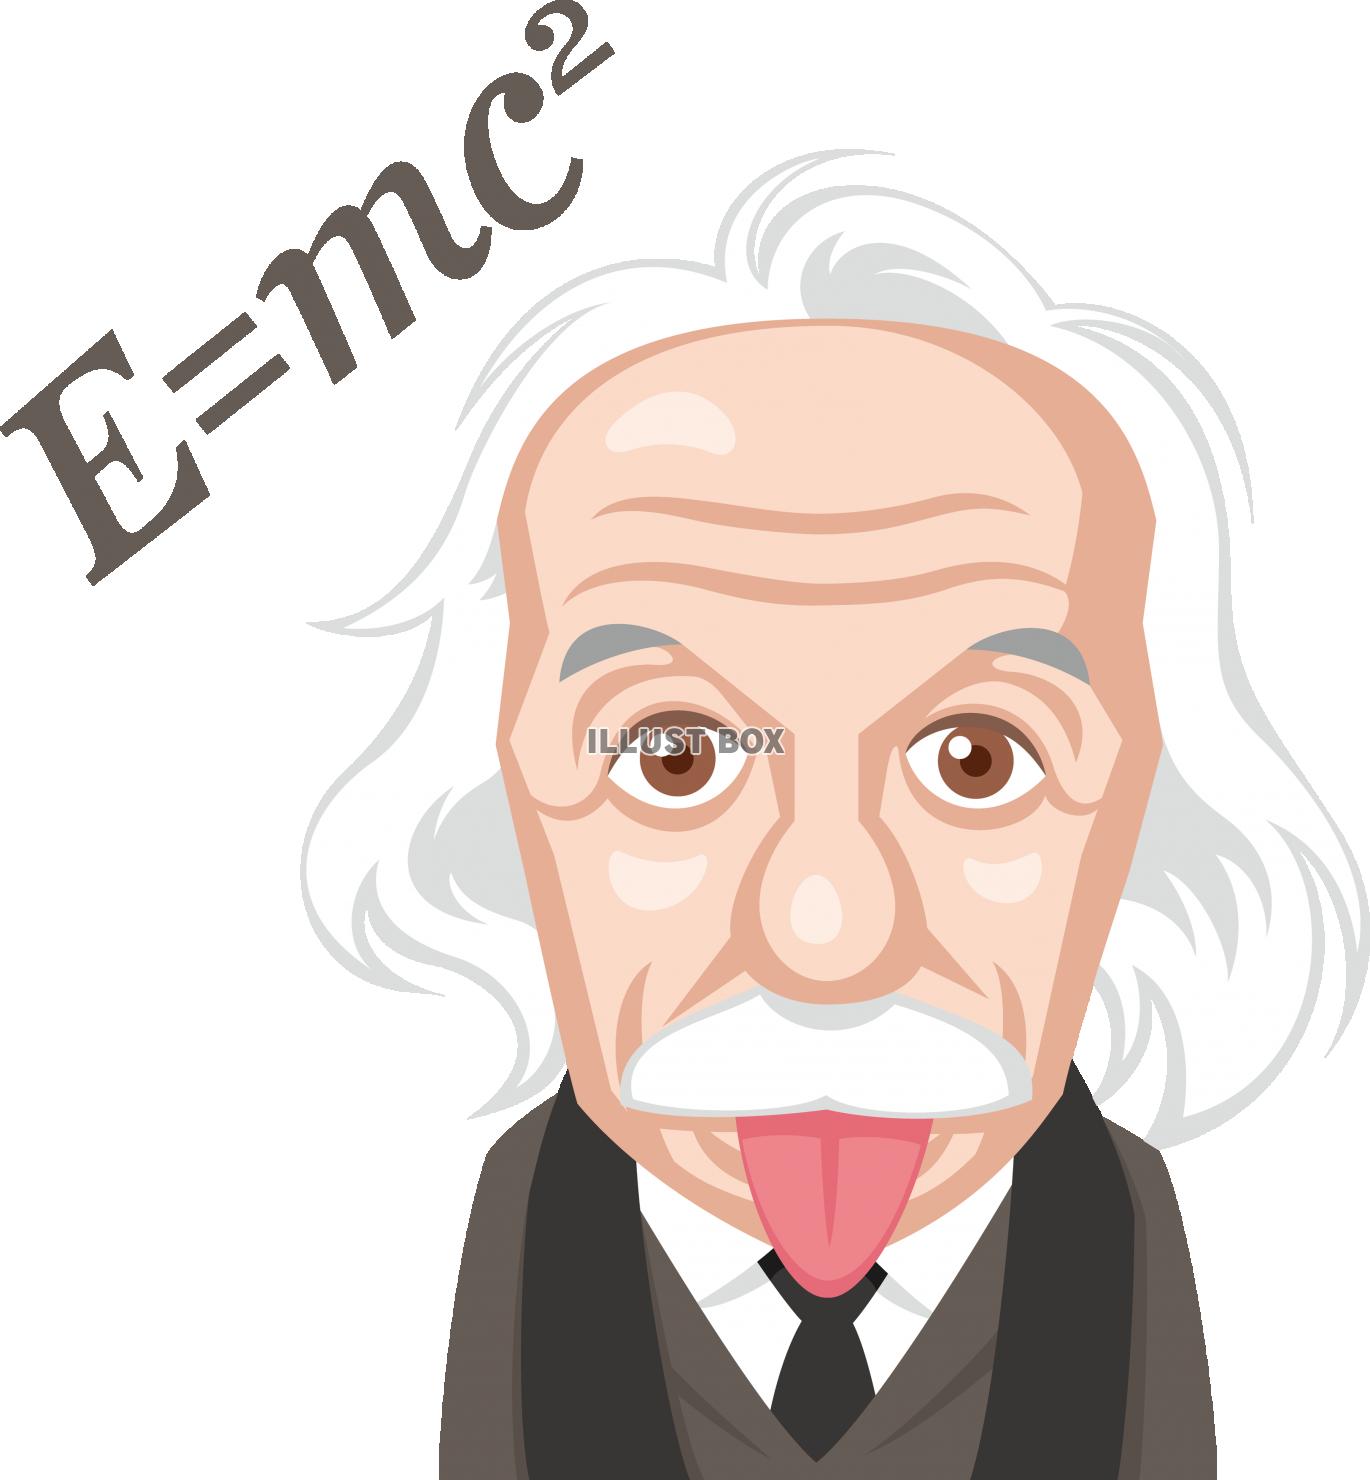 世界の偉人天才物理学者アインシュタイン